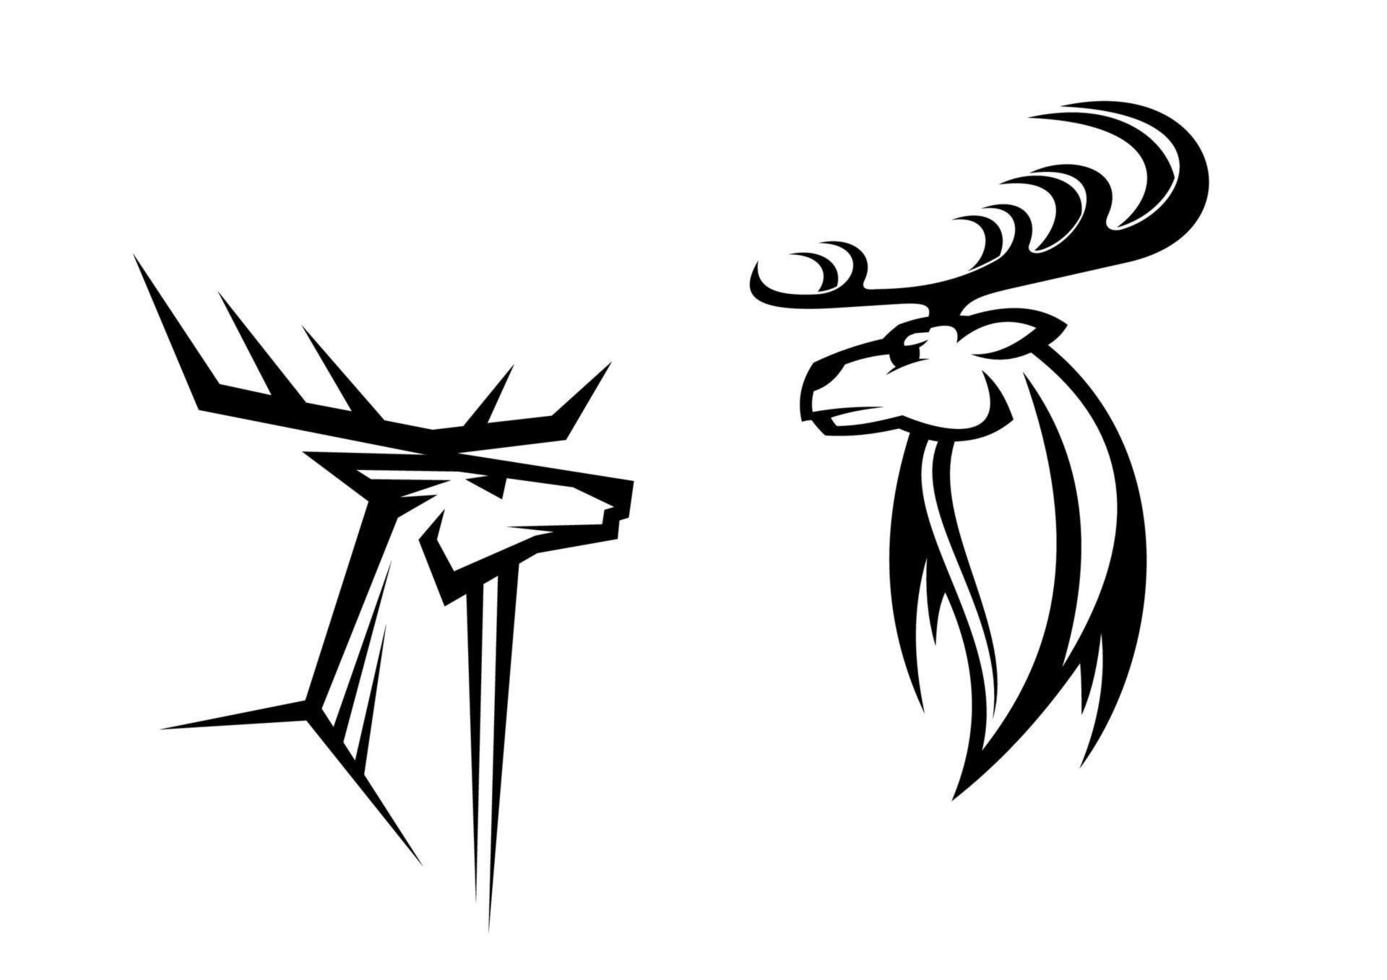 Deer mascots characers vector